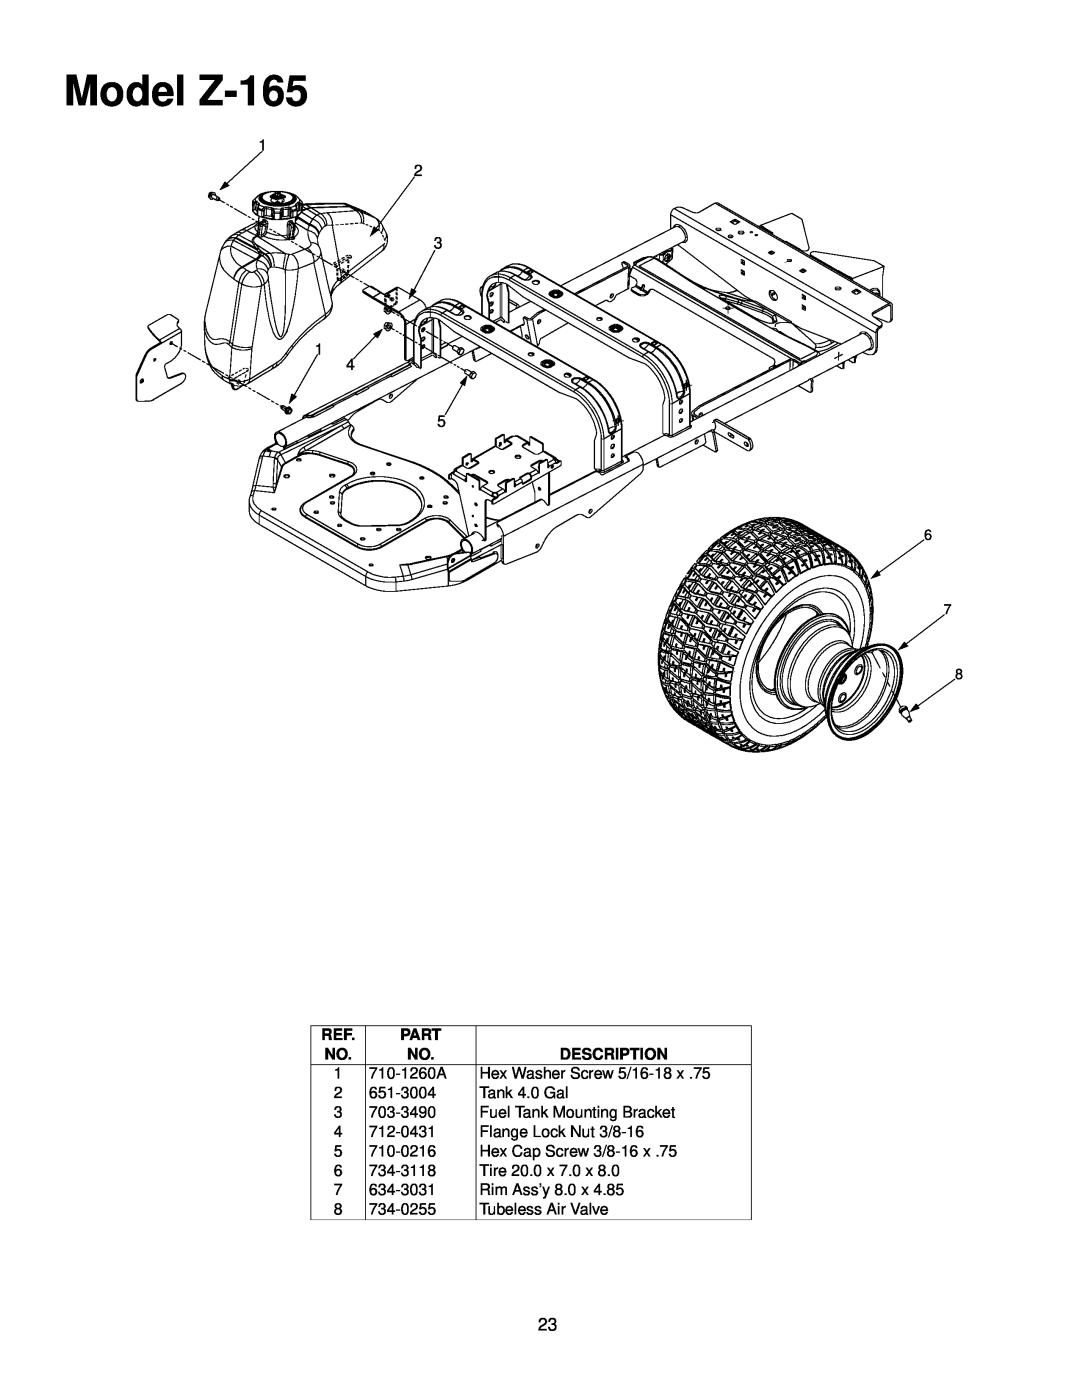 White manual Model Z-165, Part, Description 